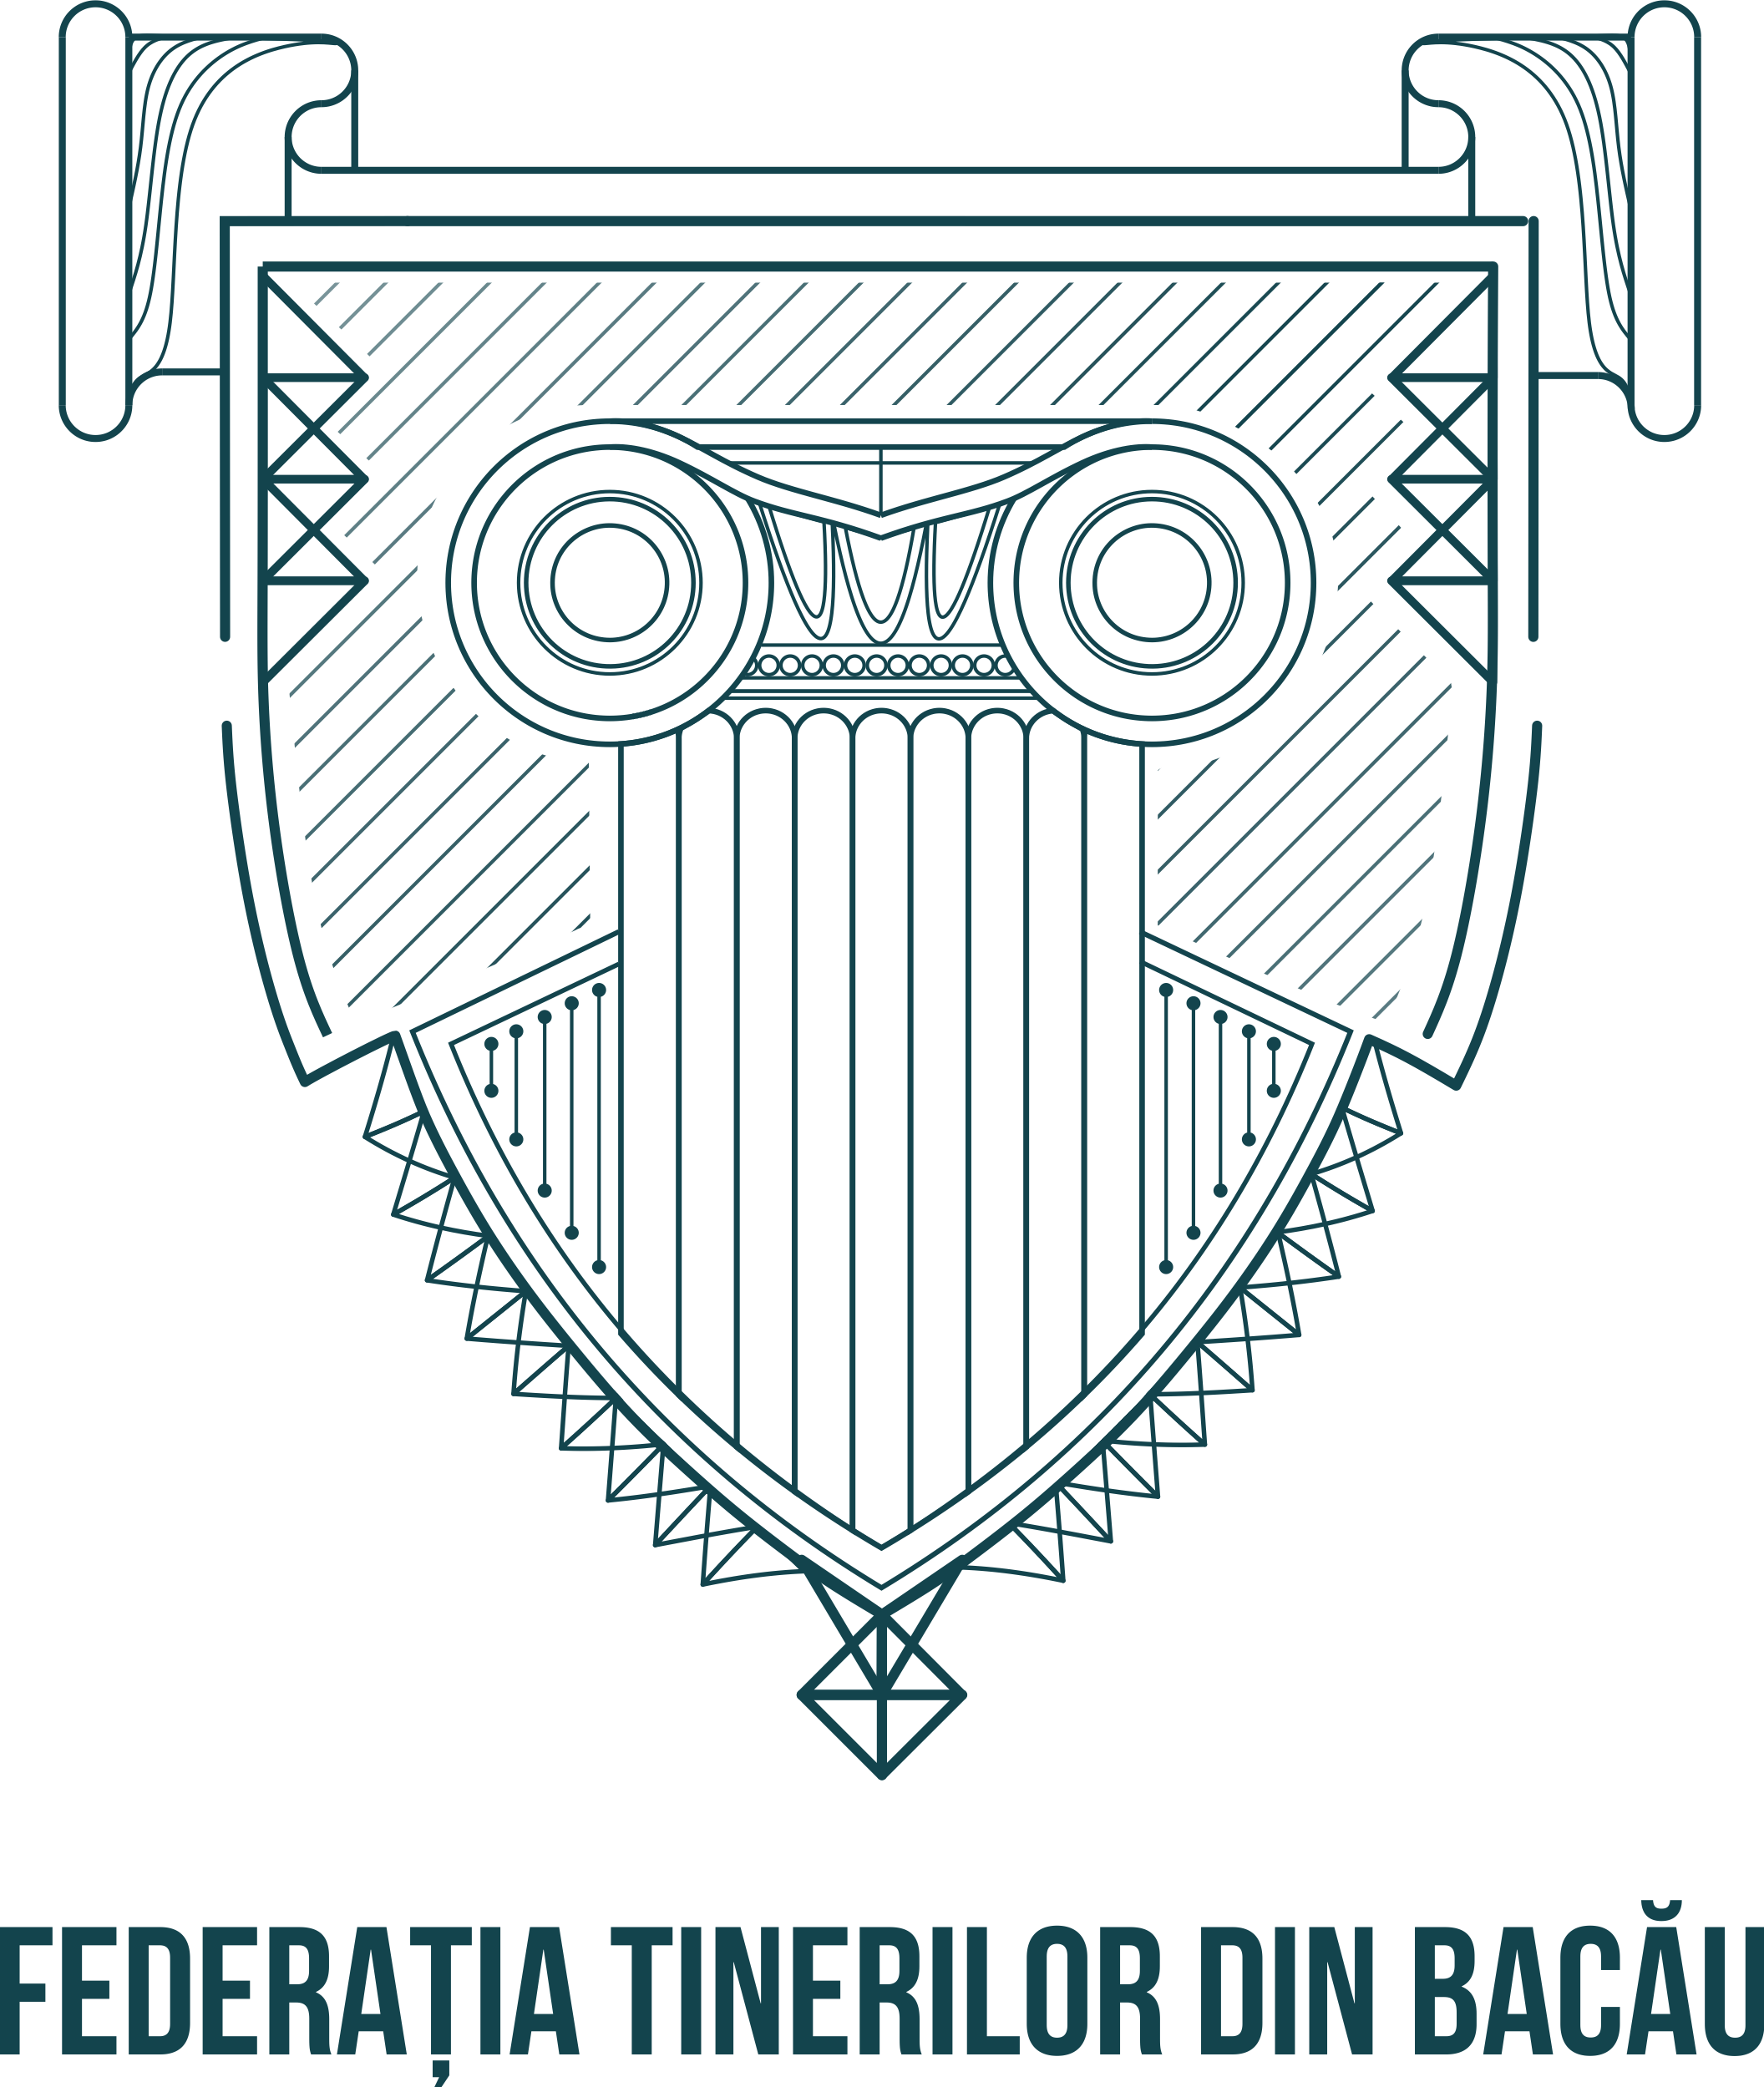 Federatia Tinerilor din Bacau logo